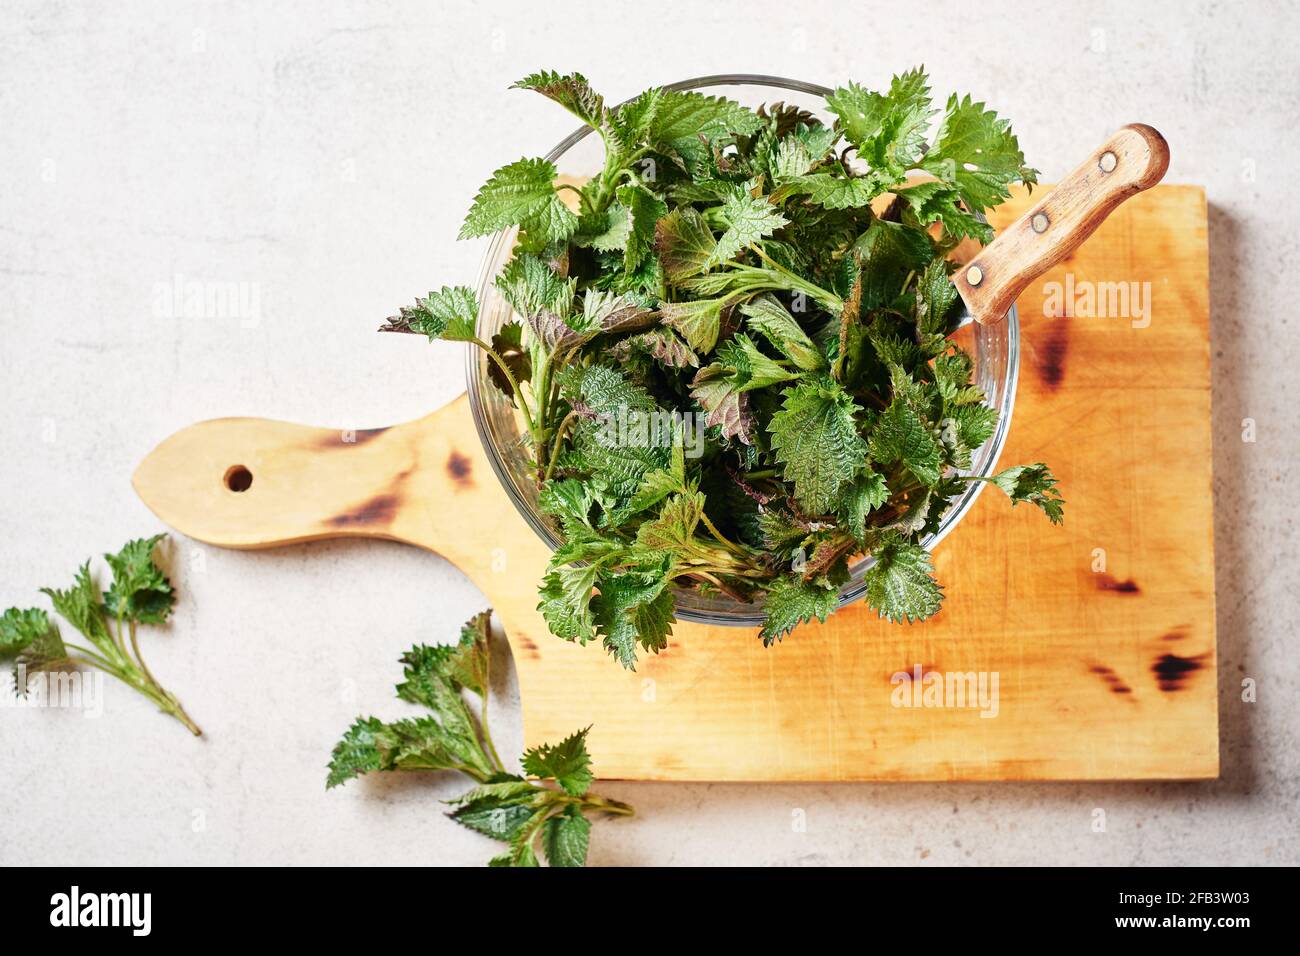 Tagliare le foglie verdi di ortica in un recipiente su un tagliere. Foto Stock